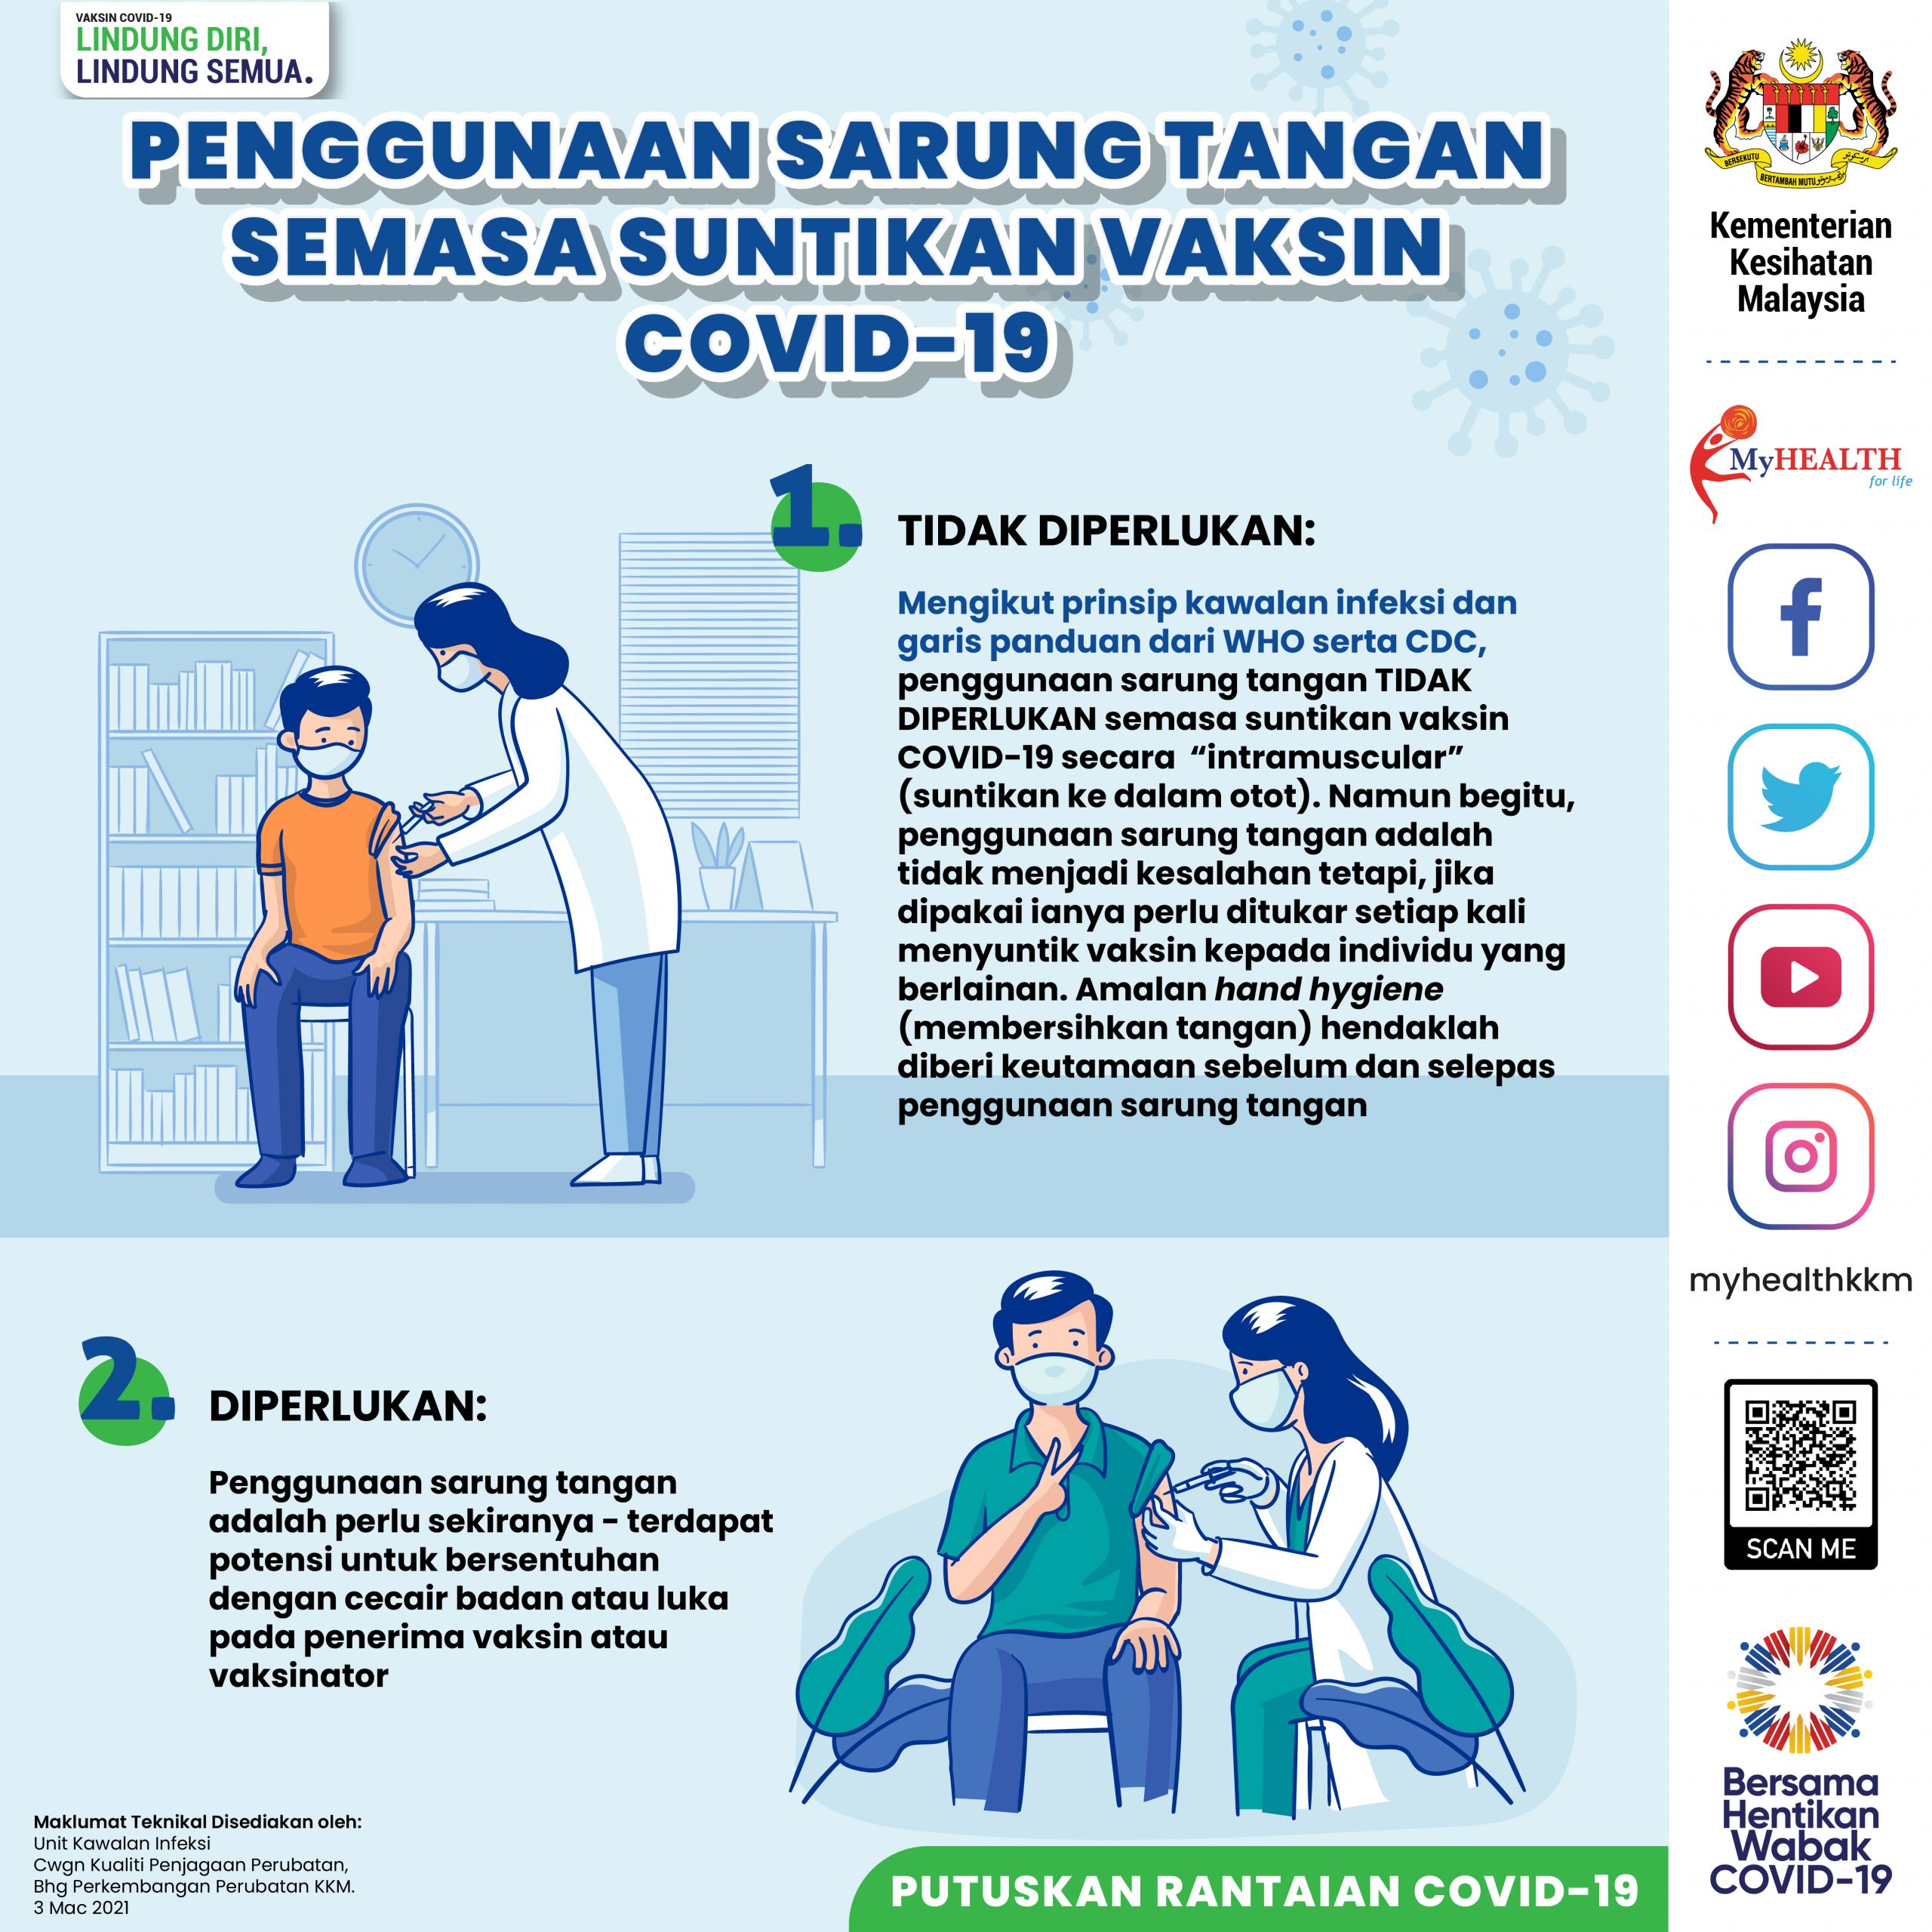 Vaksin covid 19 yang digunakan di malaysia